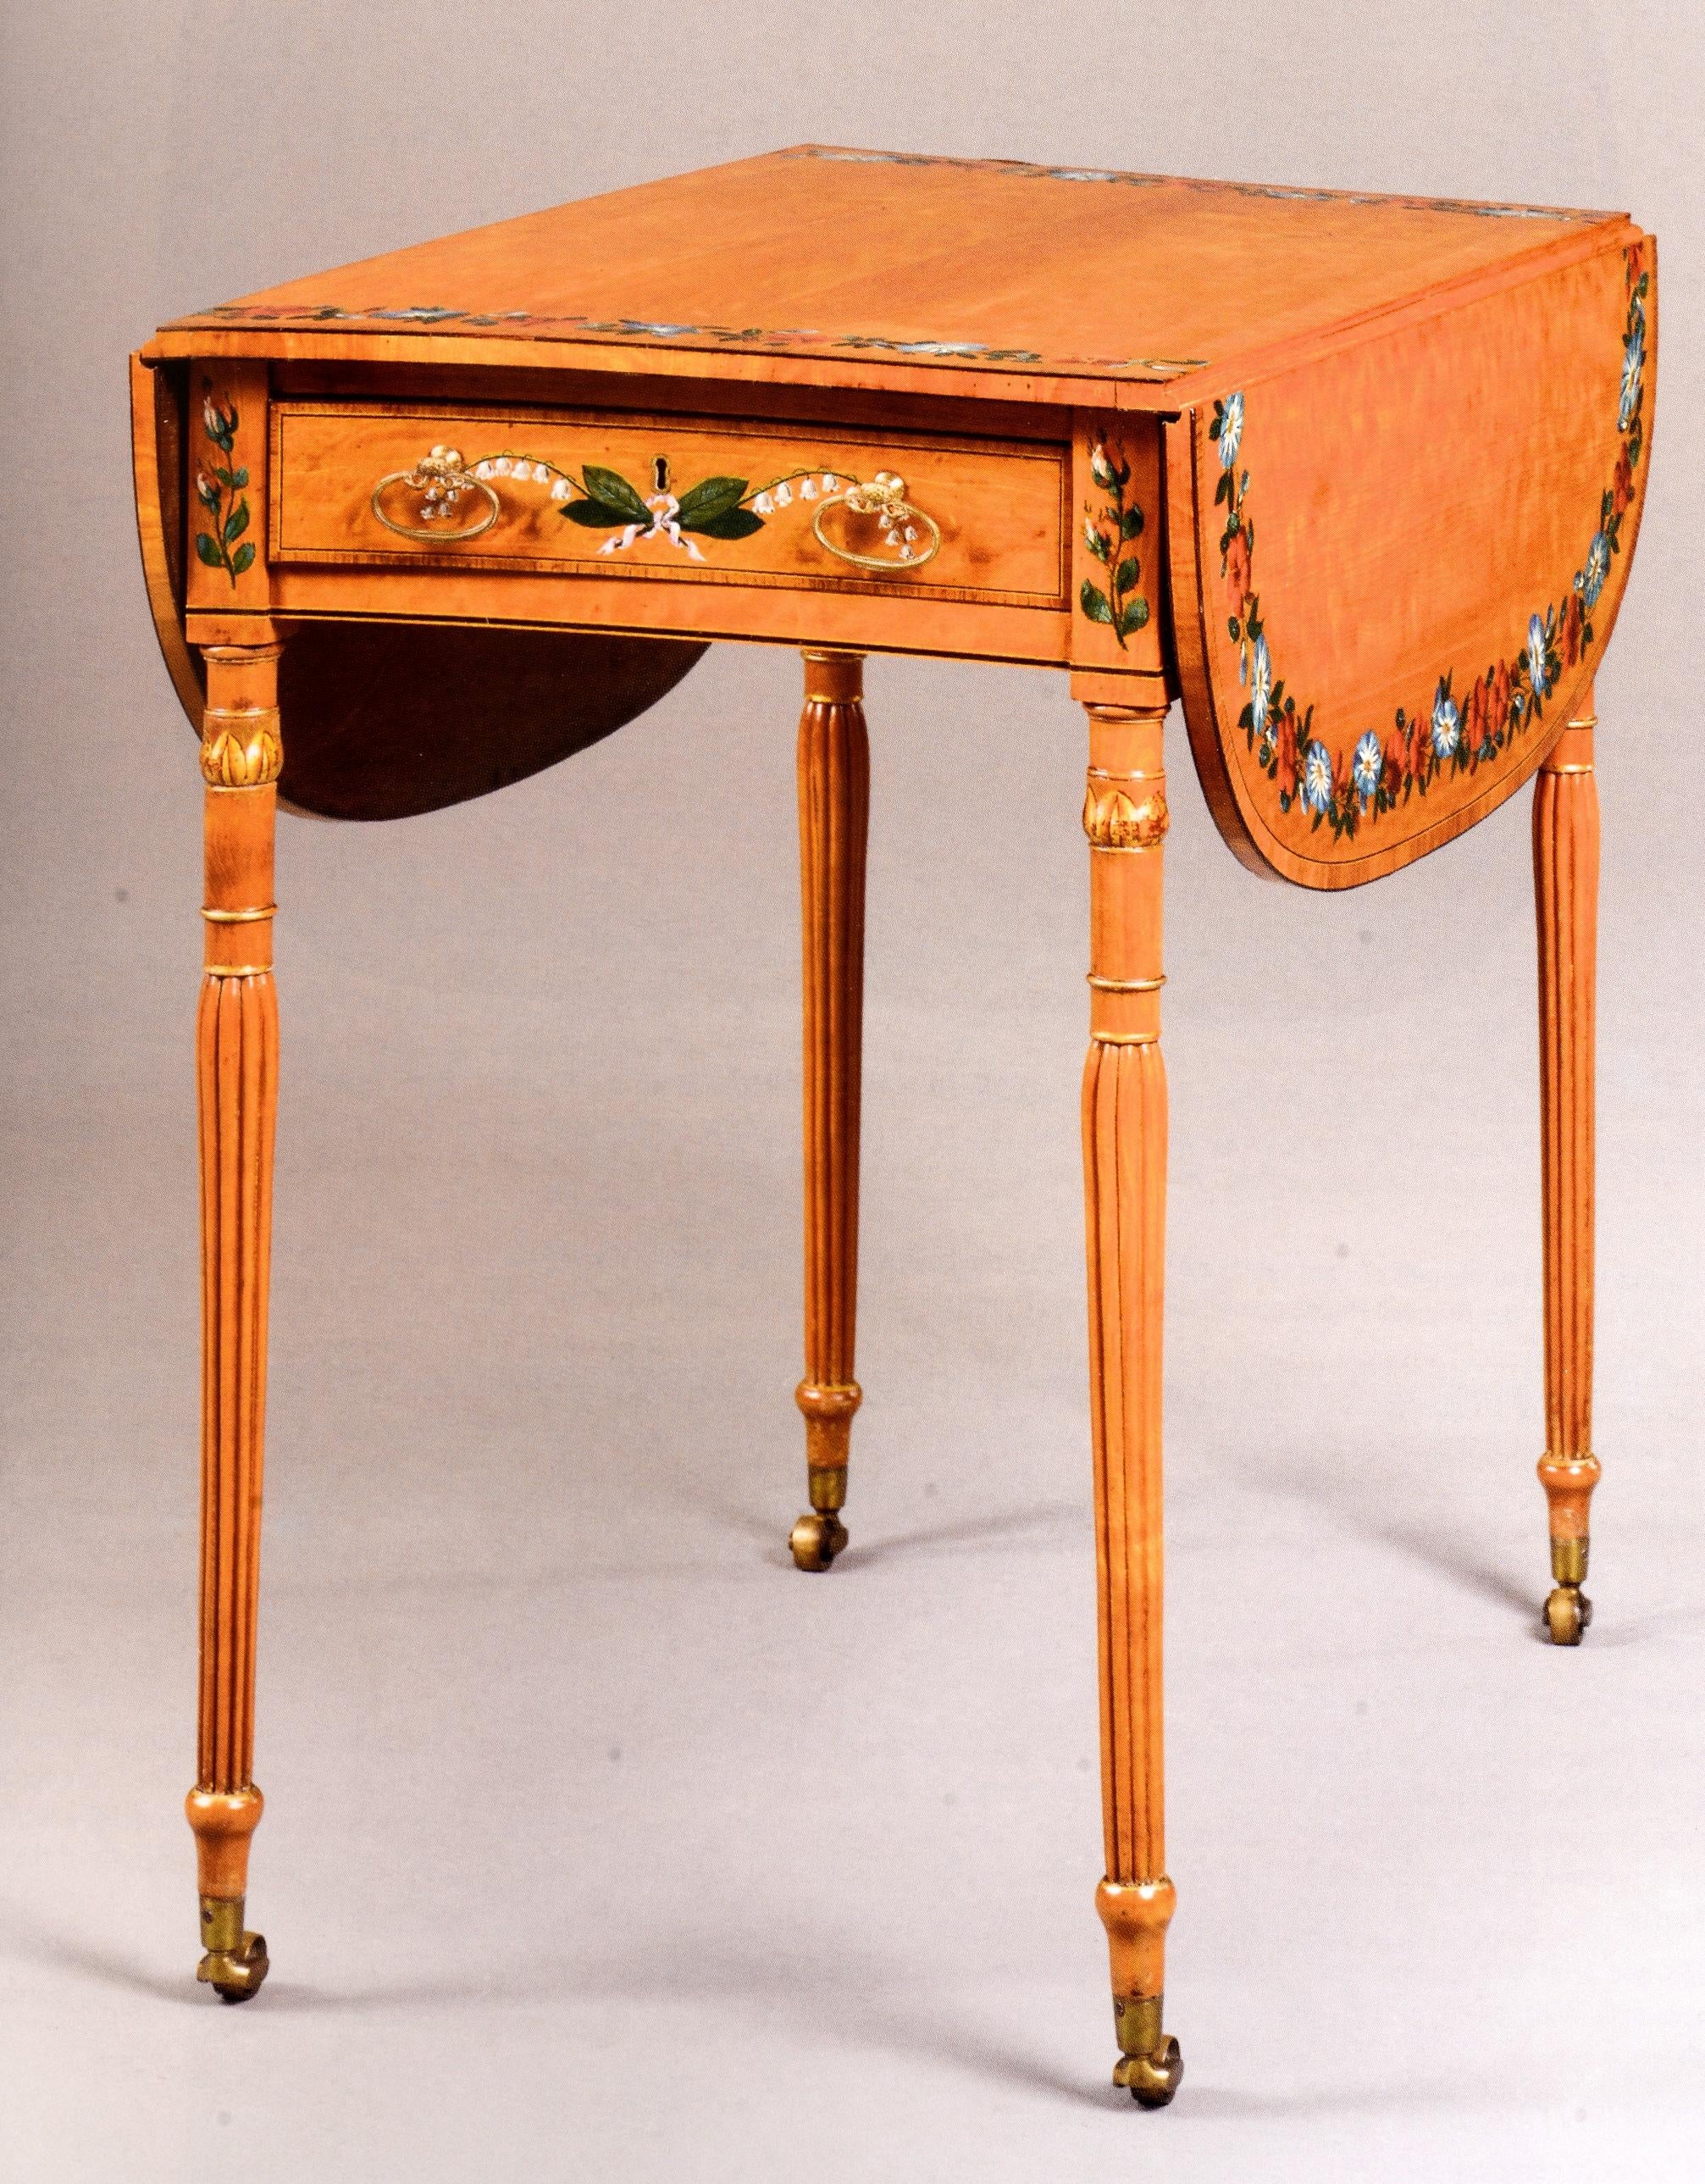 Christie's : Important English Furniture, propriété de la succession de Vander Poel en vente 9